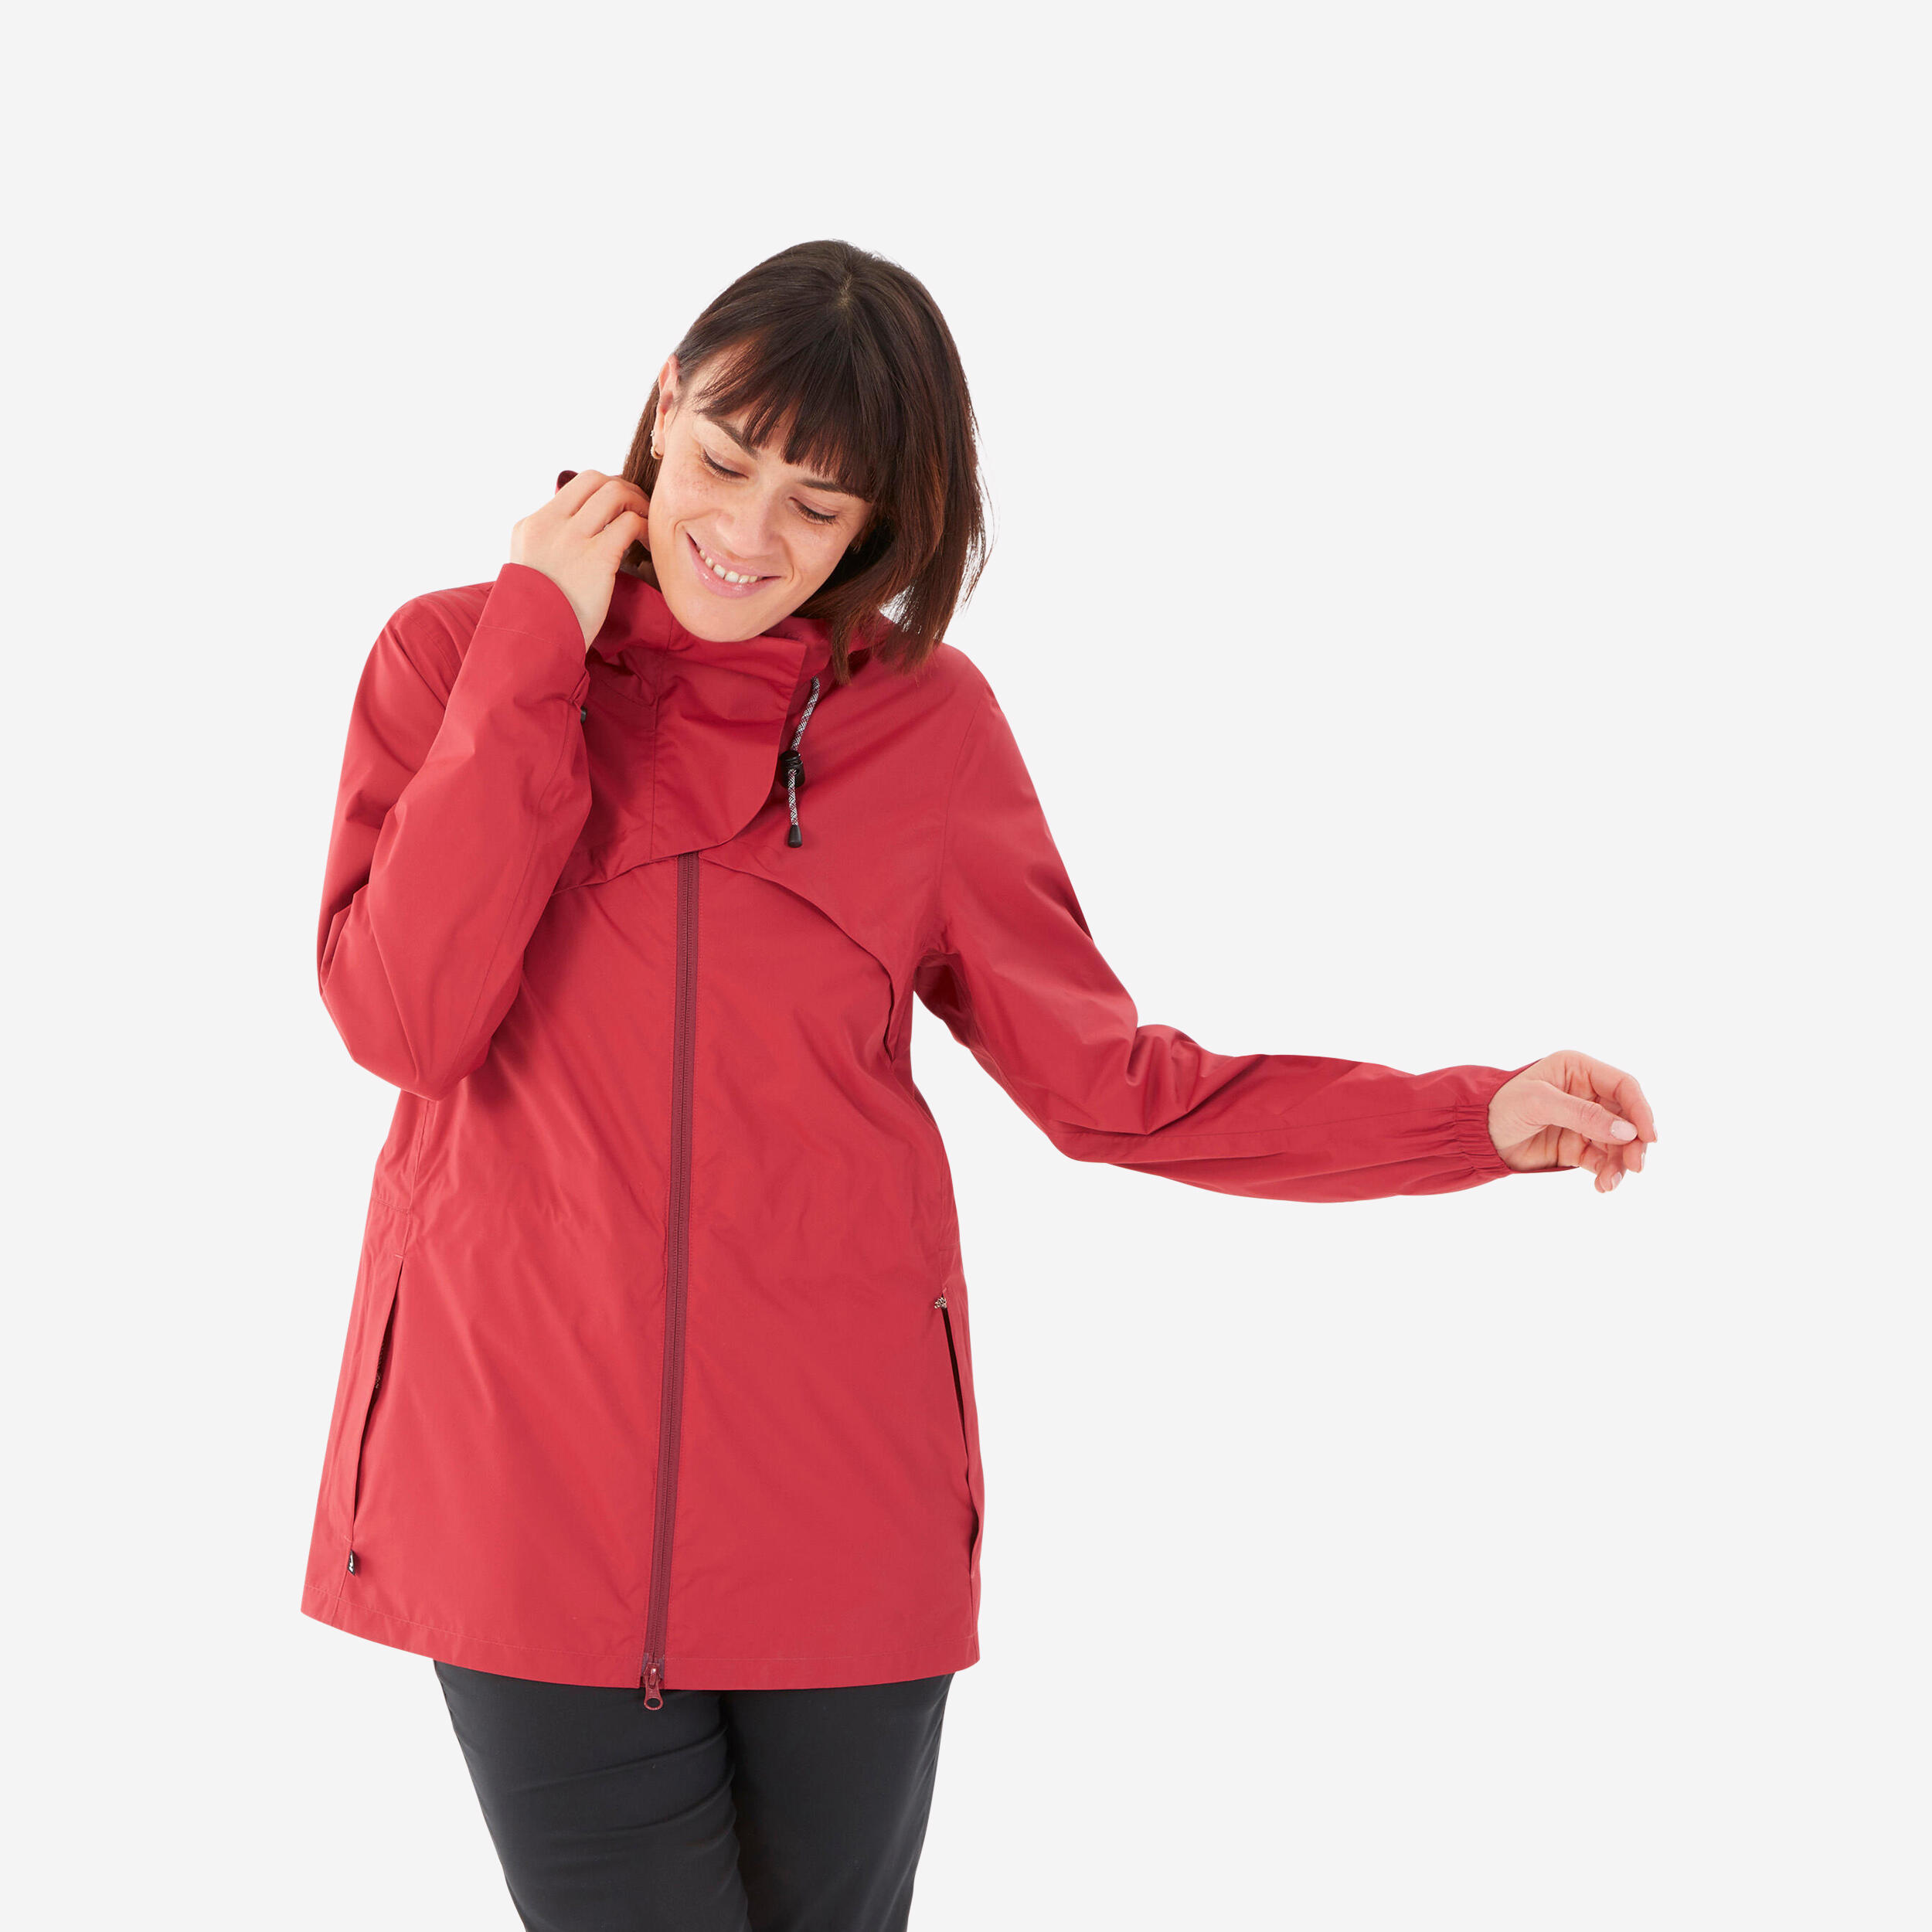 QUECHUA Hiking Raincoat - NH500 Waterproof Jacket - Women - Ruby Red